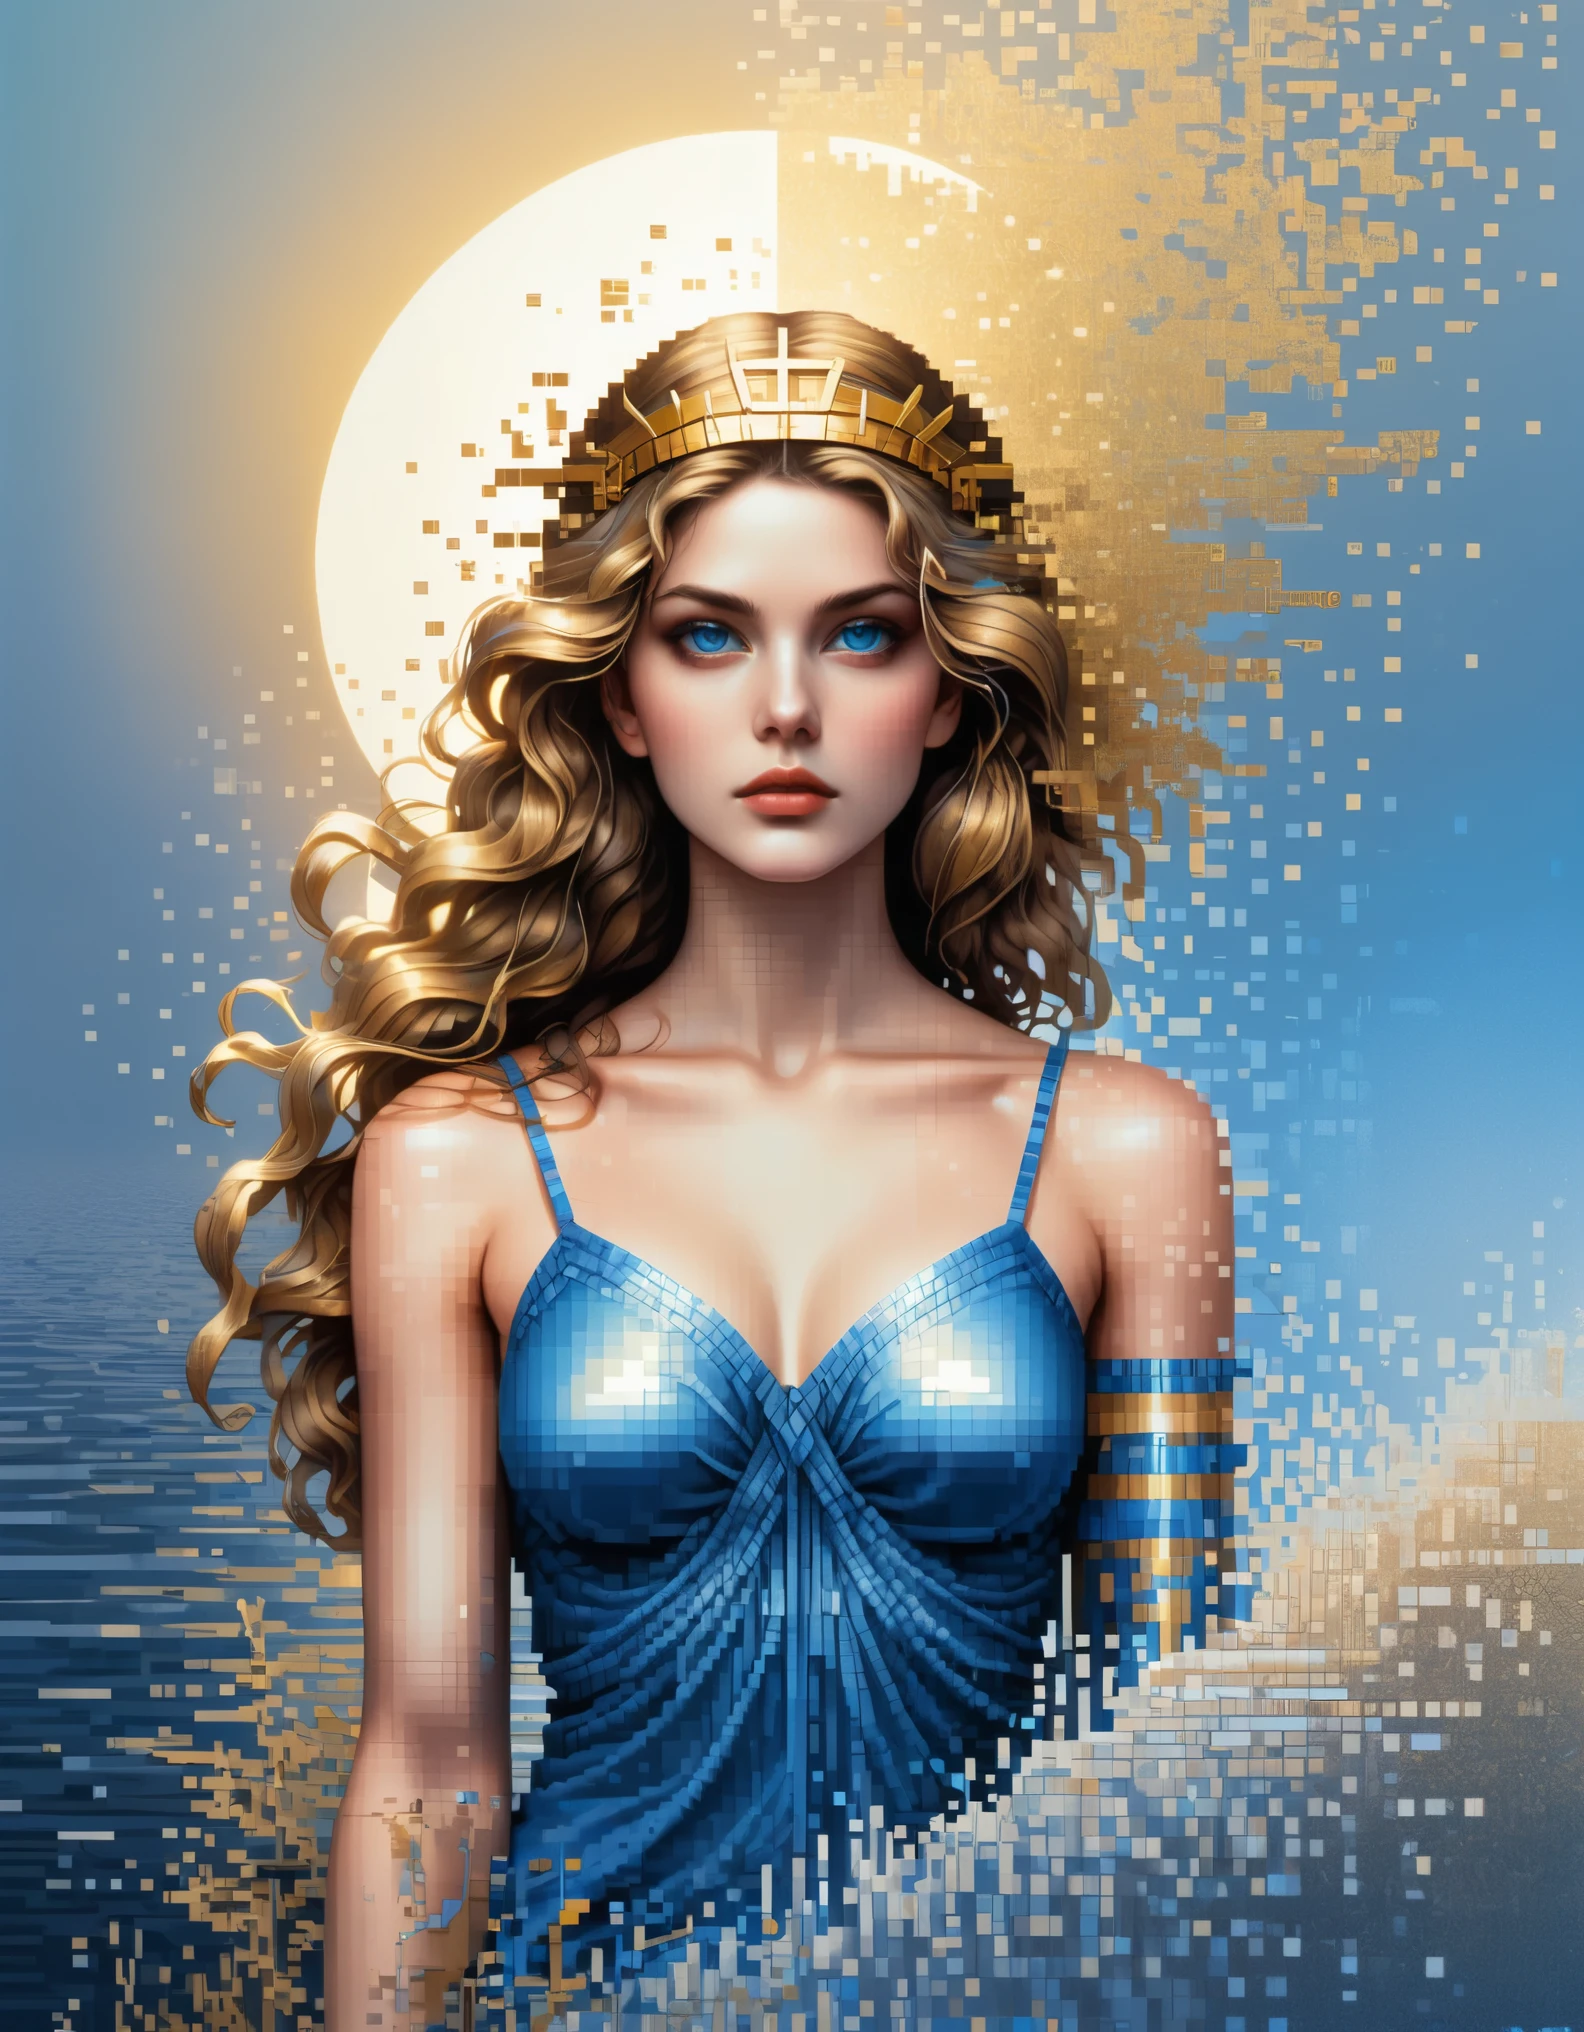 arte de pixel,al estilo de Apollonia Saintclair, hermosos detalles，Hermosa diosa Atenea en un color azul degradado de píxeles disueltos，（todo el cuerpo），Ojos azules extraordinariamente hermosos.，descomponerse gradualmente，El sol dorado brilla，Reflexión parcial en el agua.，